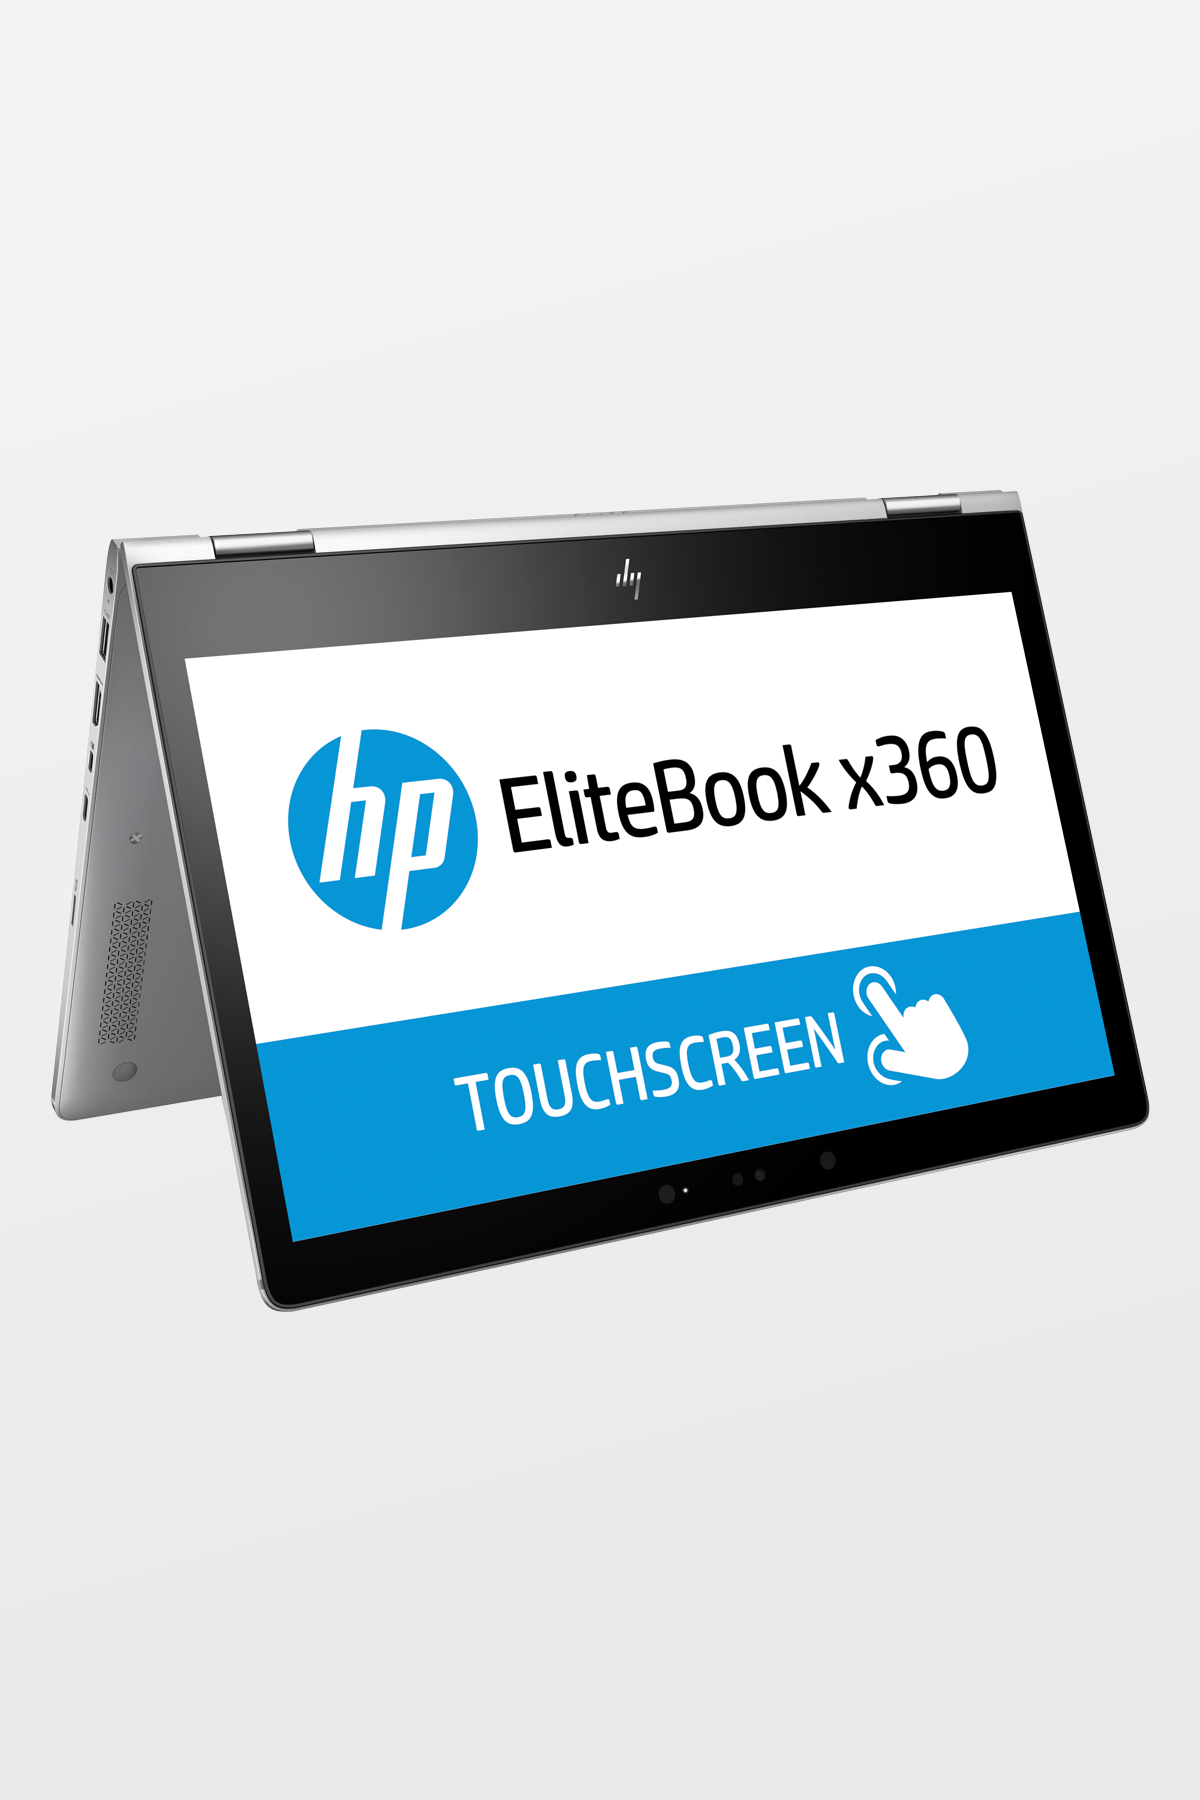 HP - EliteBook X360 1030 G2, 13.3”, FHD, Touch Screen, I5-7300, 8GB, 256GB SSD, W10P 64, 3YR NBD OnSite Warranty